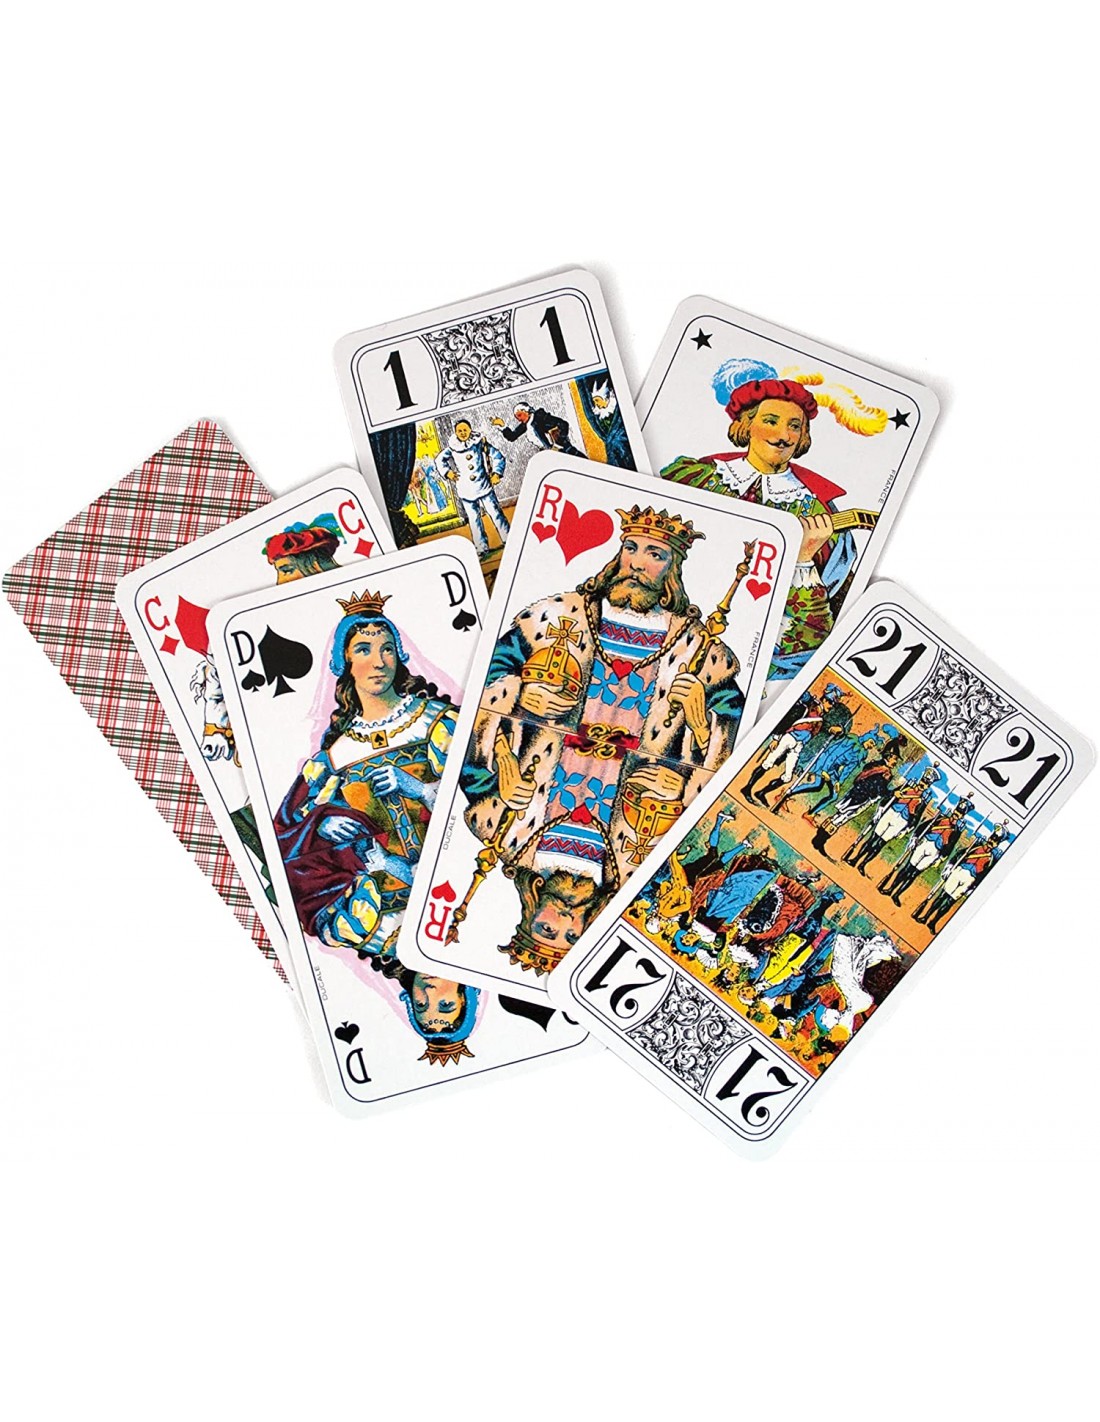 Ducale - 54 cartes de Luxe - Jeu de cartes